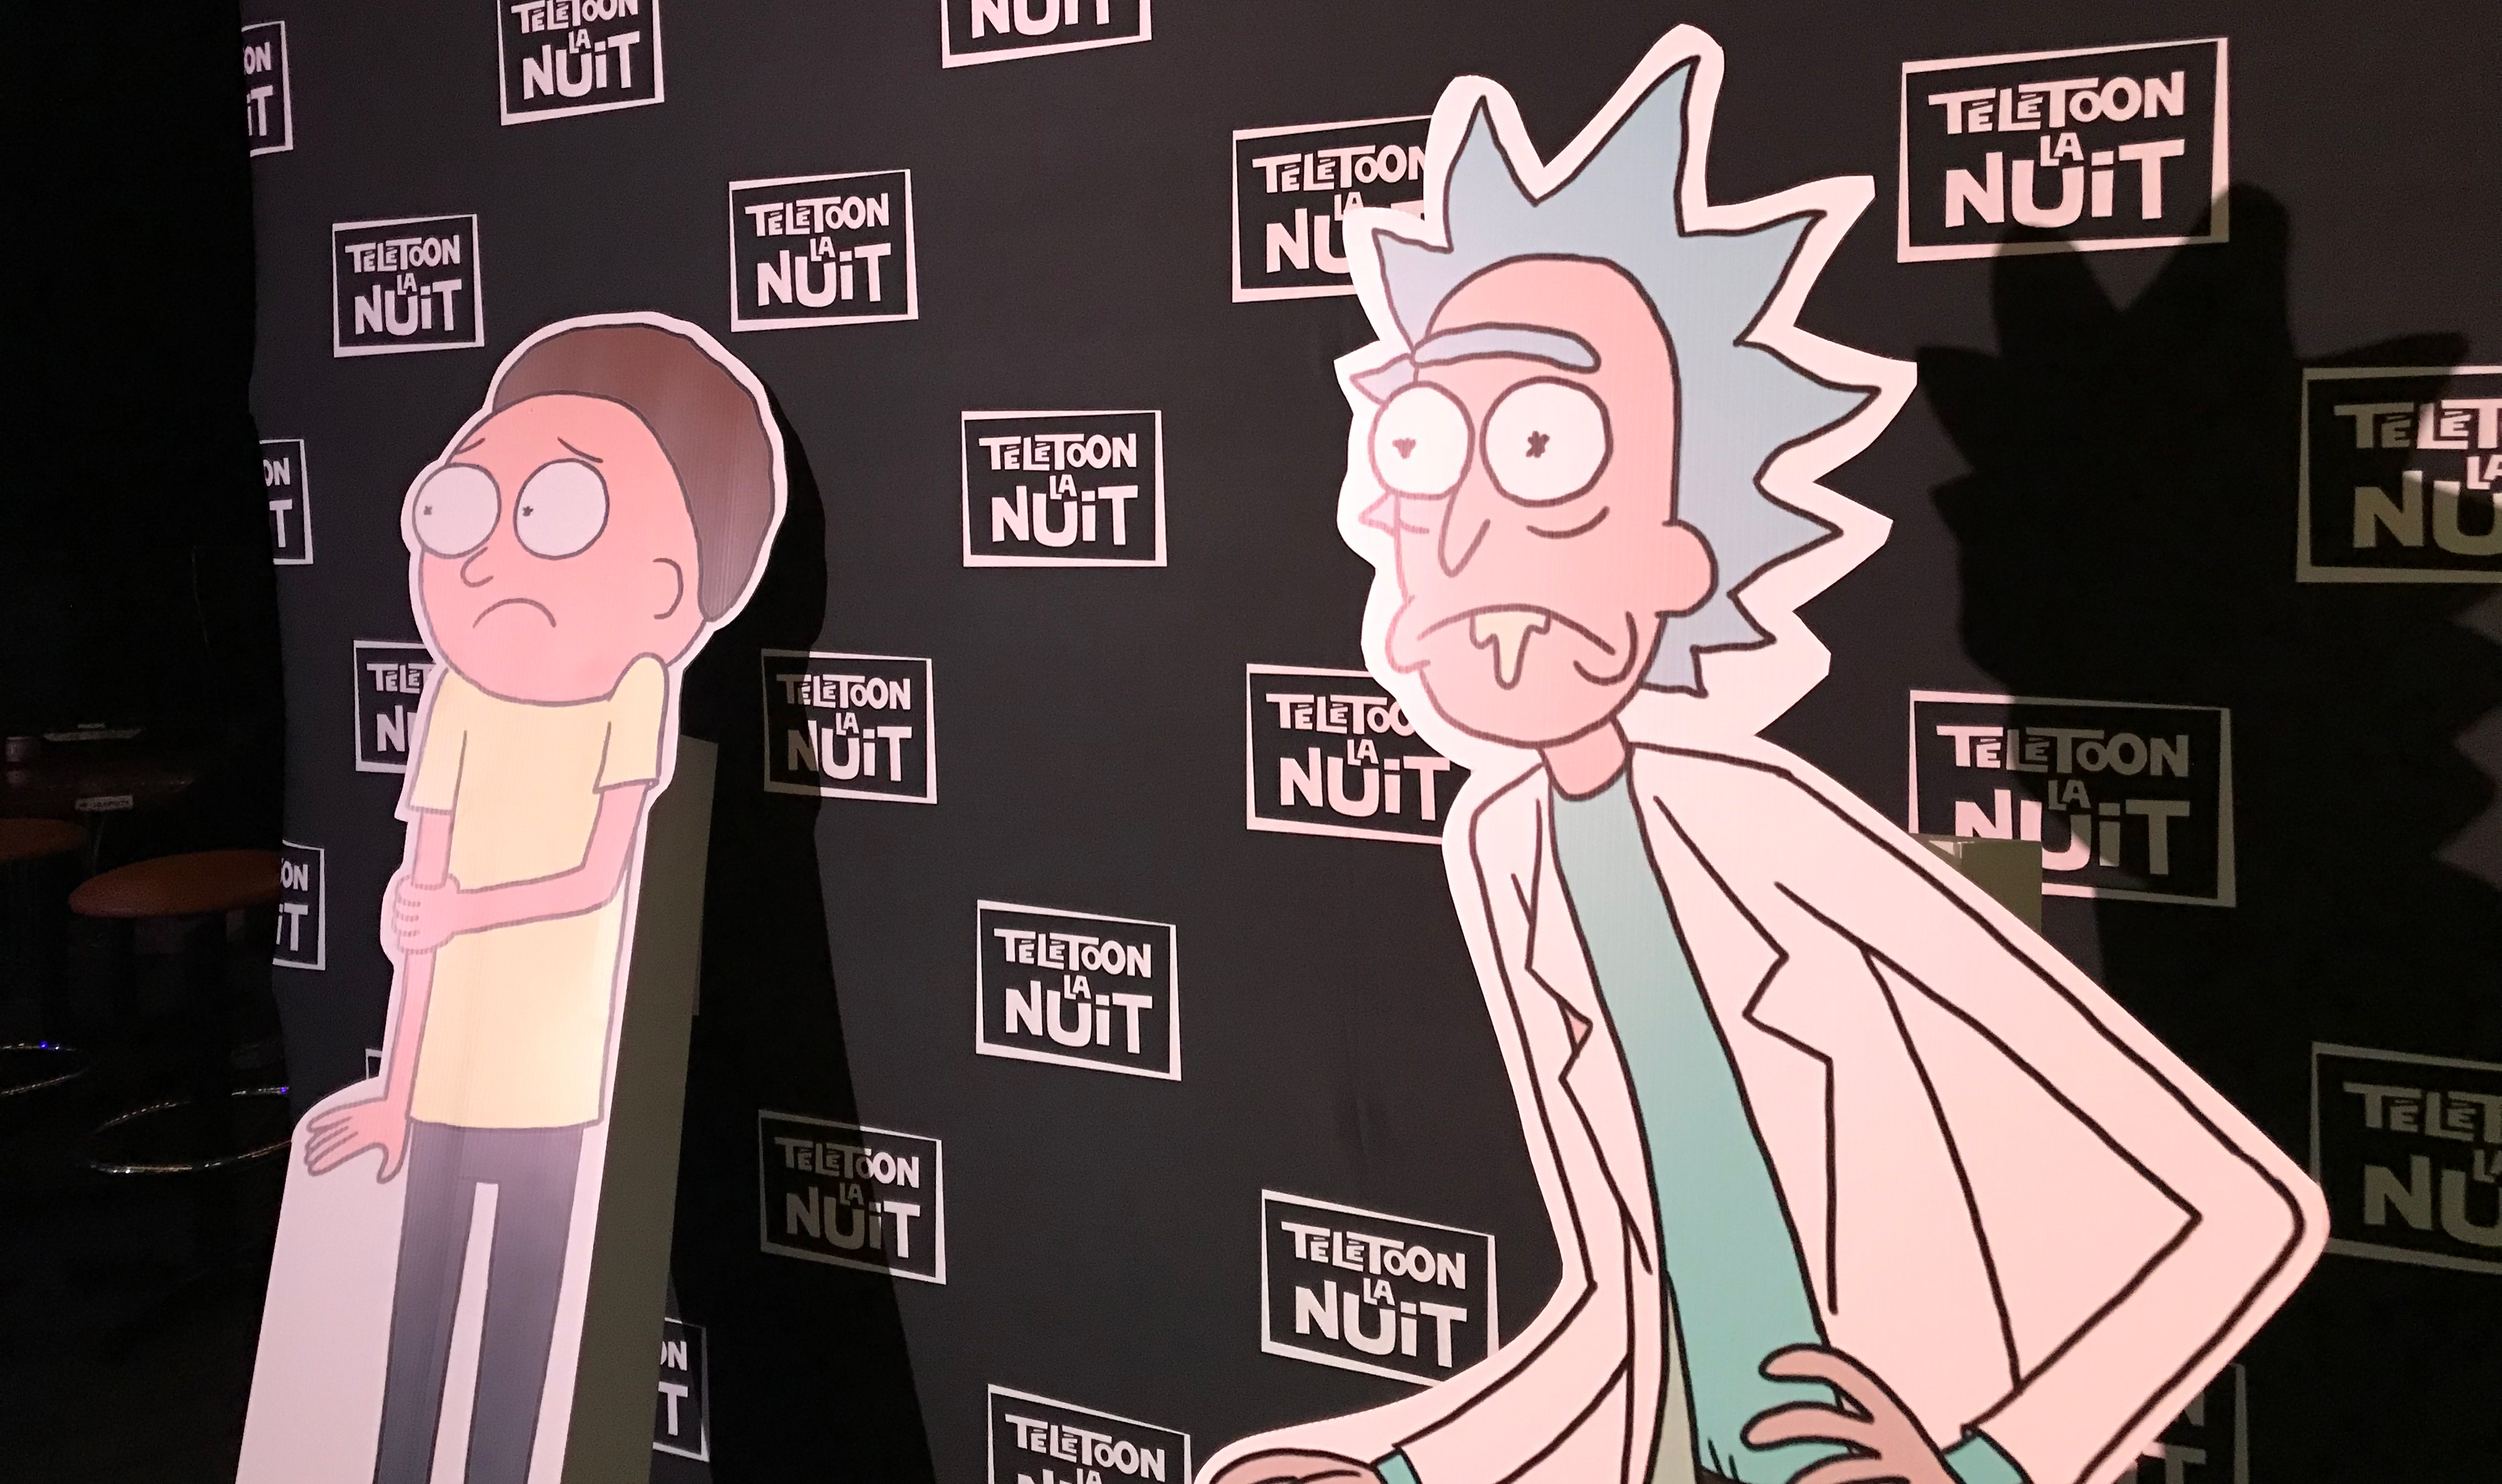 Rick and Morty - Télétoon la nuit